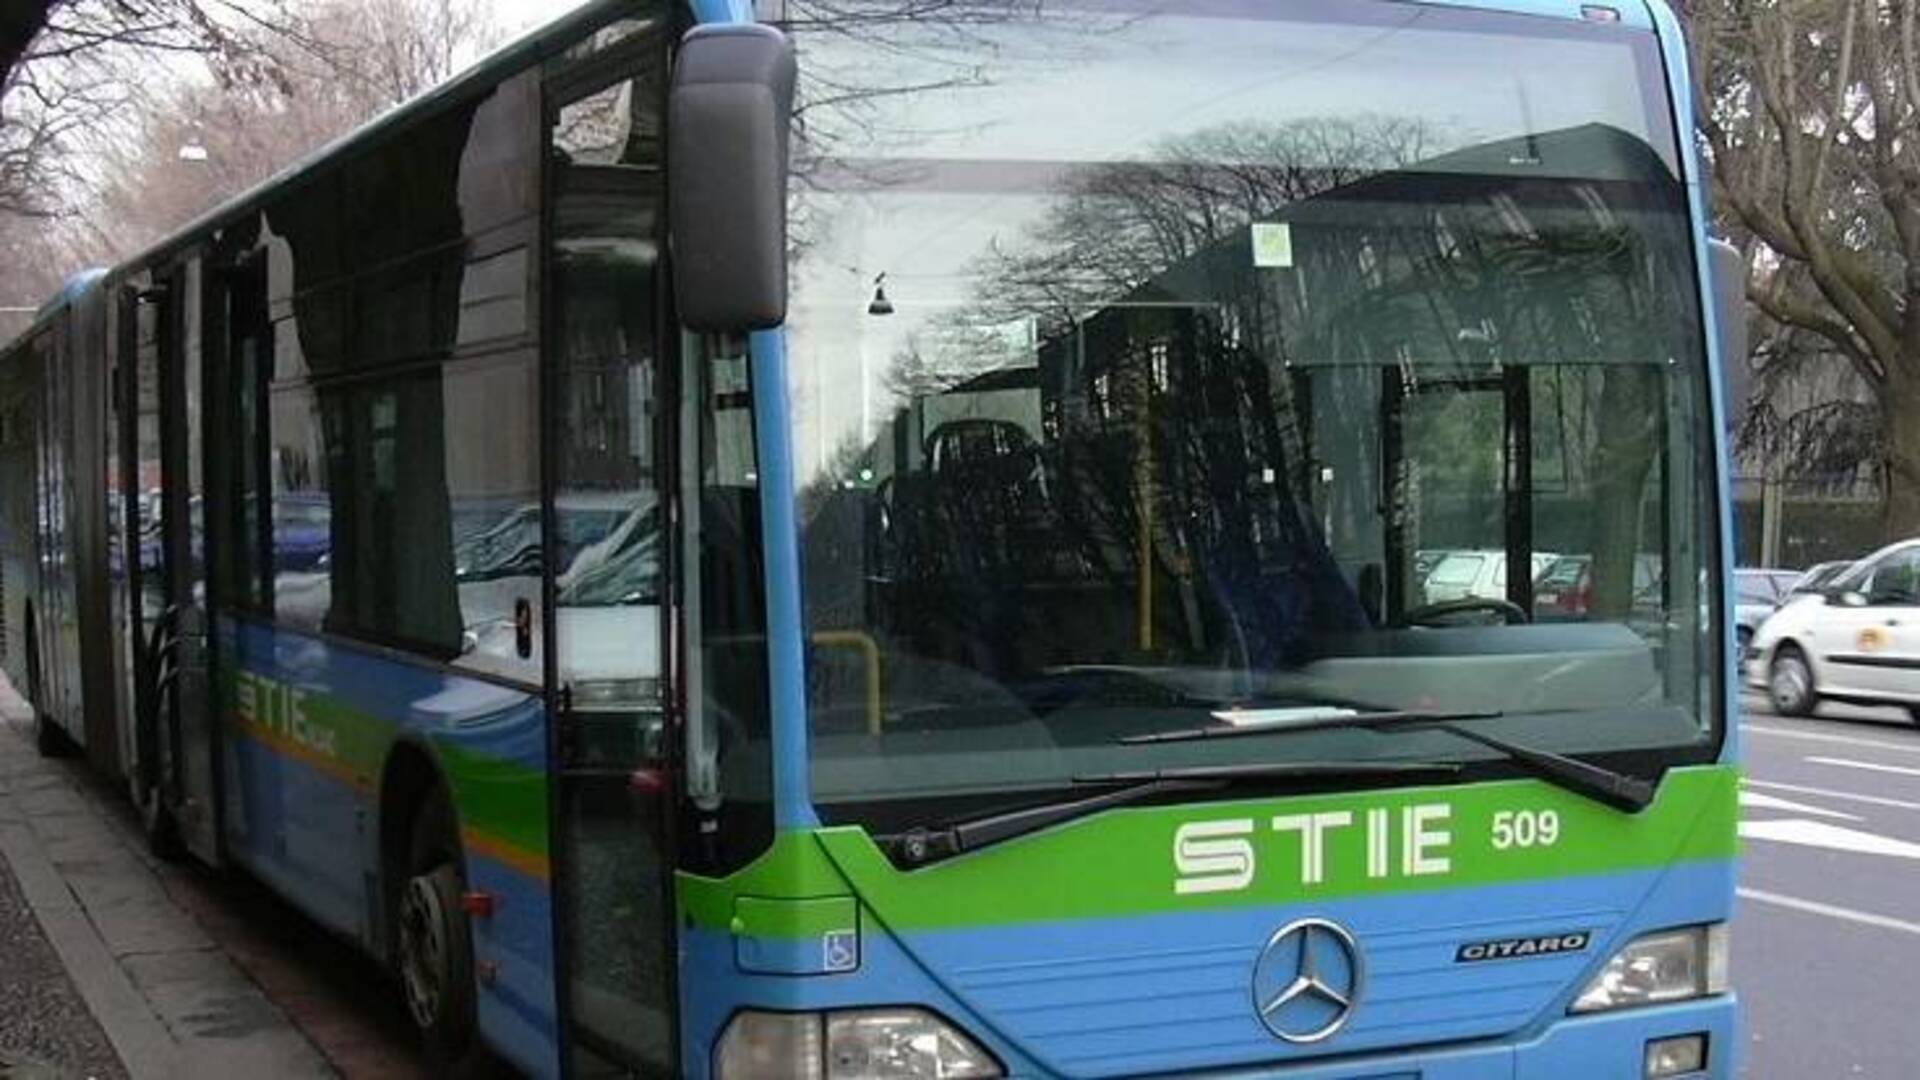 Aumenti tariffe bus urbani, il Comune chiede diffida per la Stie